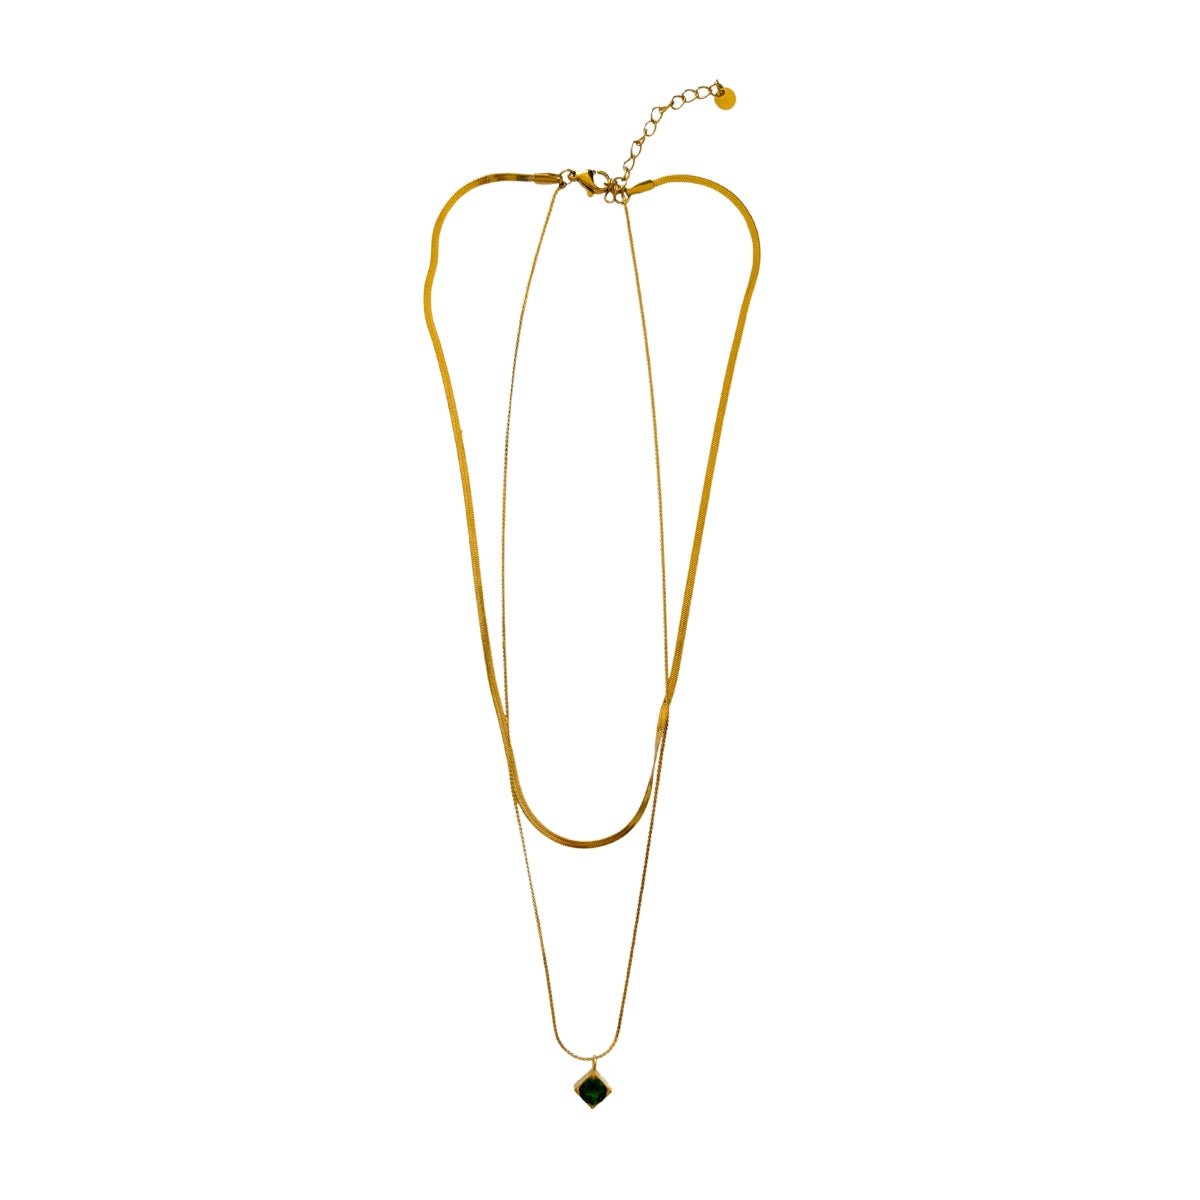 Γυναικείο κολιέ ατσάλινο διπλό με πράσινη πέτρα ζιργκόν επιχρυσωμένο 14k (N1396) - necklace - charmy.gr